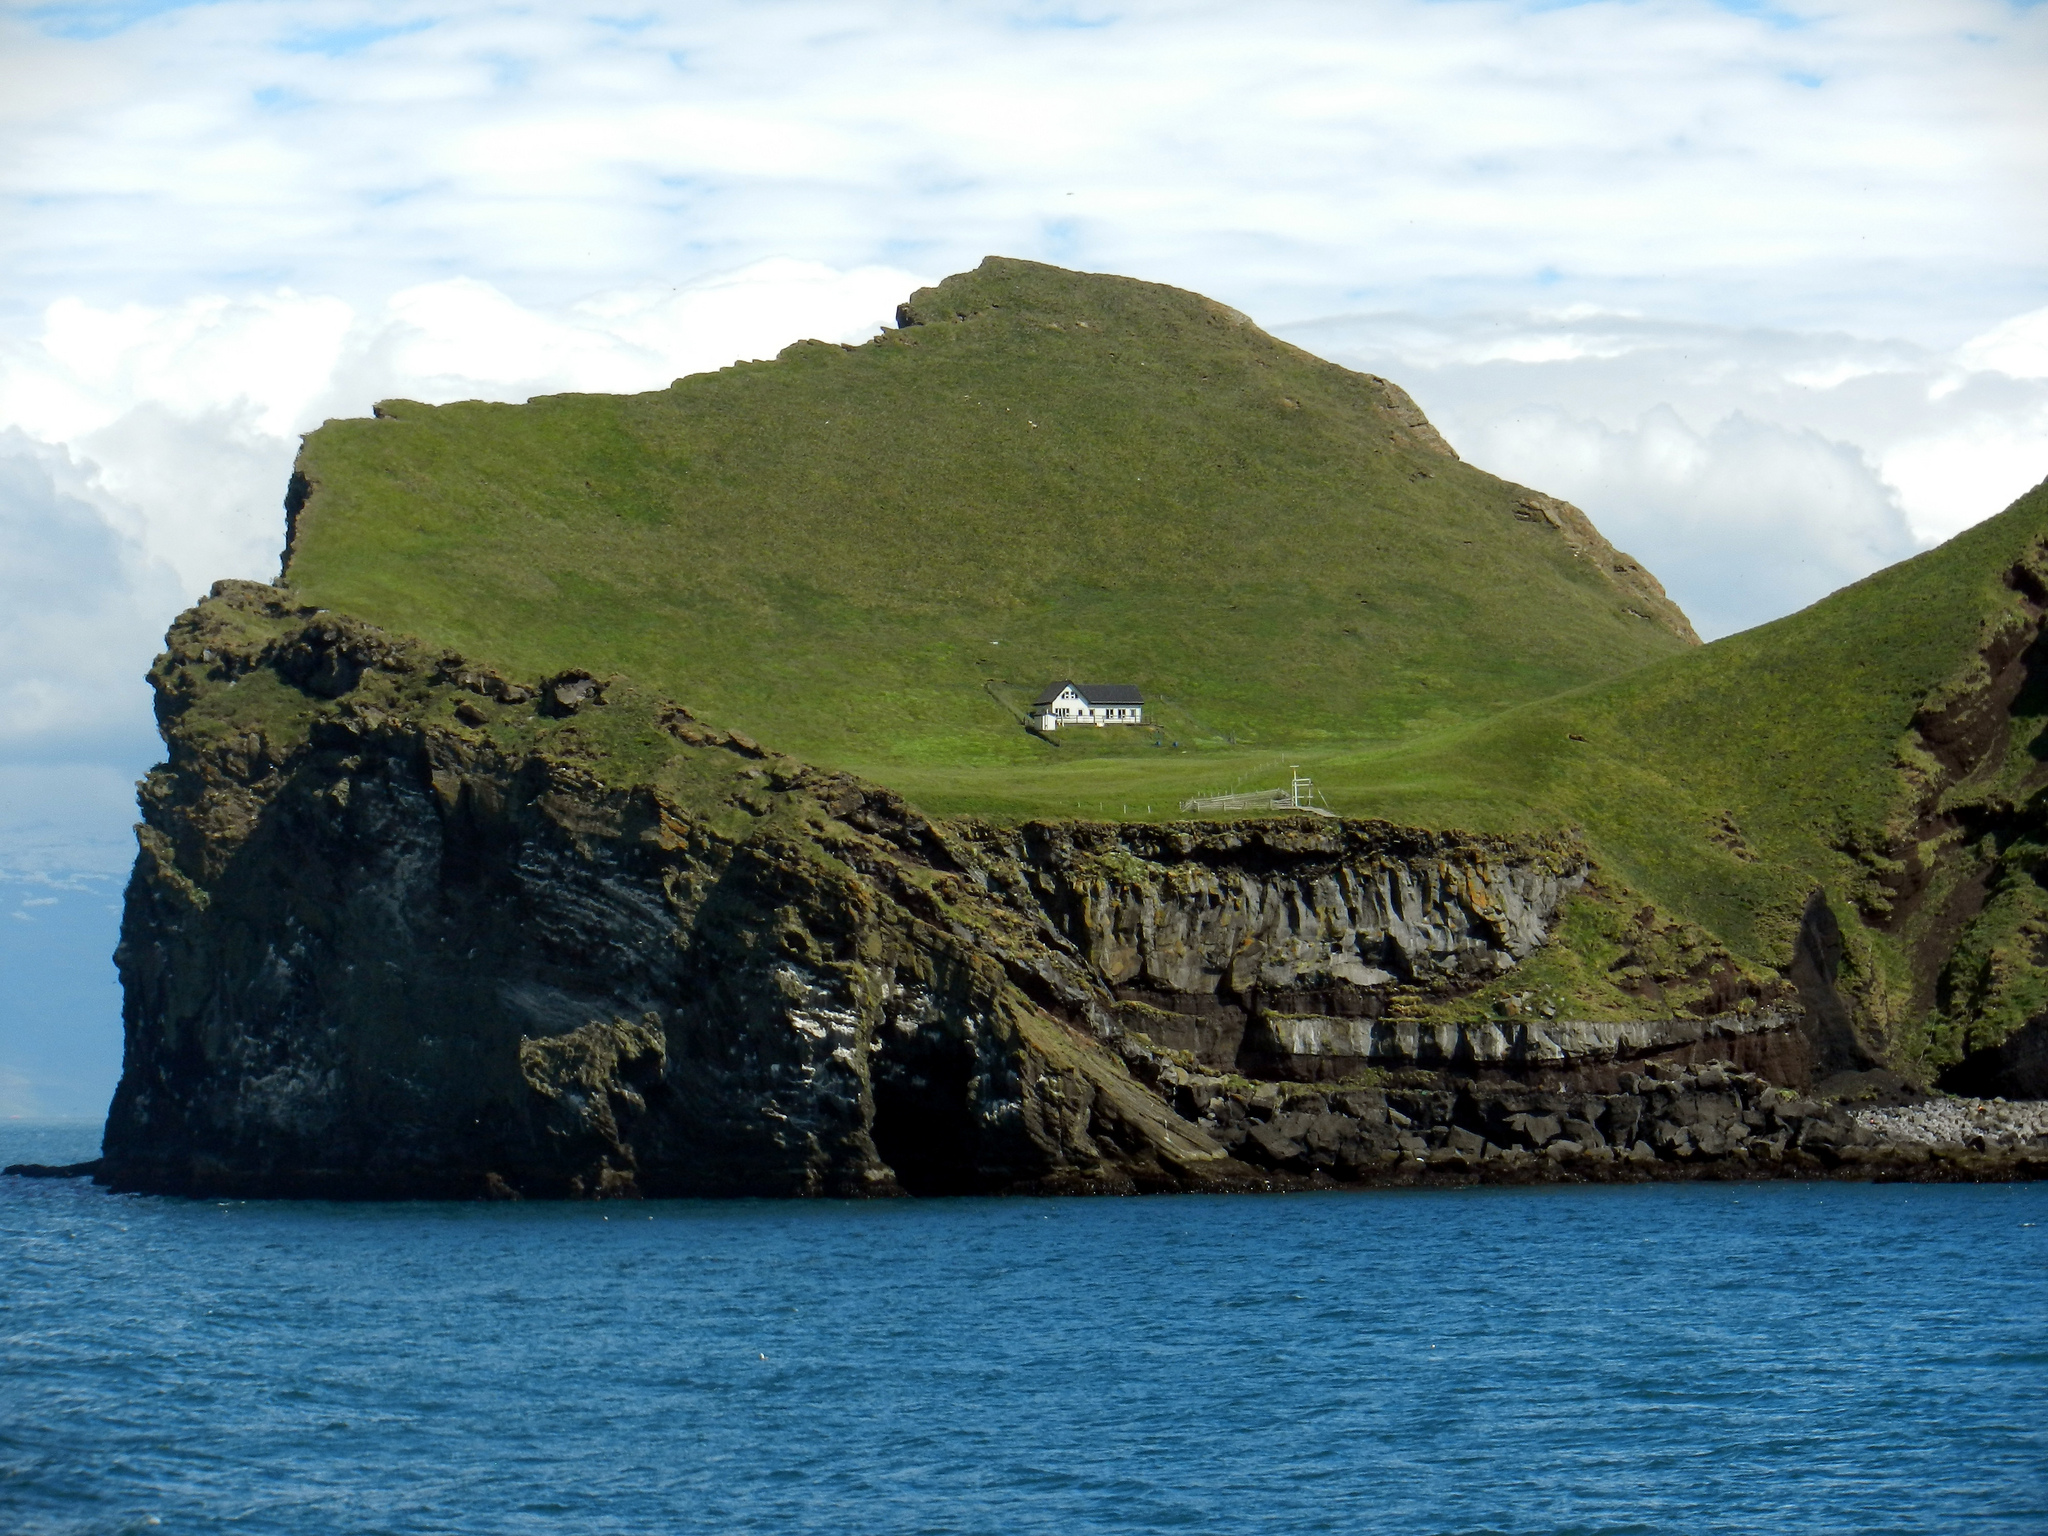 Remote island. Остров Эллидаэй Исландия. Одинокий дом на острове Эллидаэй Исландия. Остров Эдлидаэй в Исландии. Вестманнаэйяр - архипелаг в Исландии.